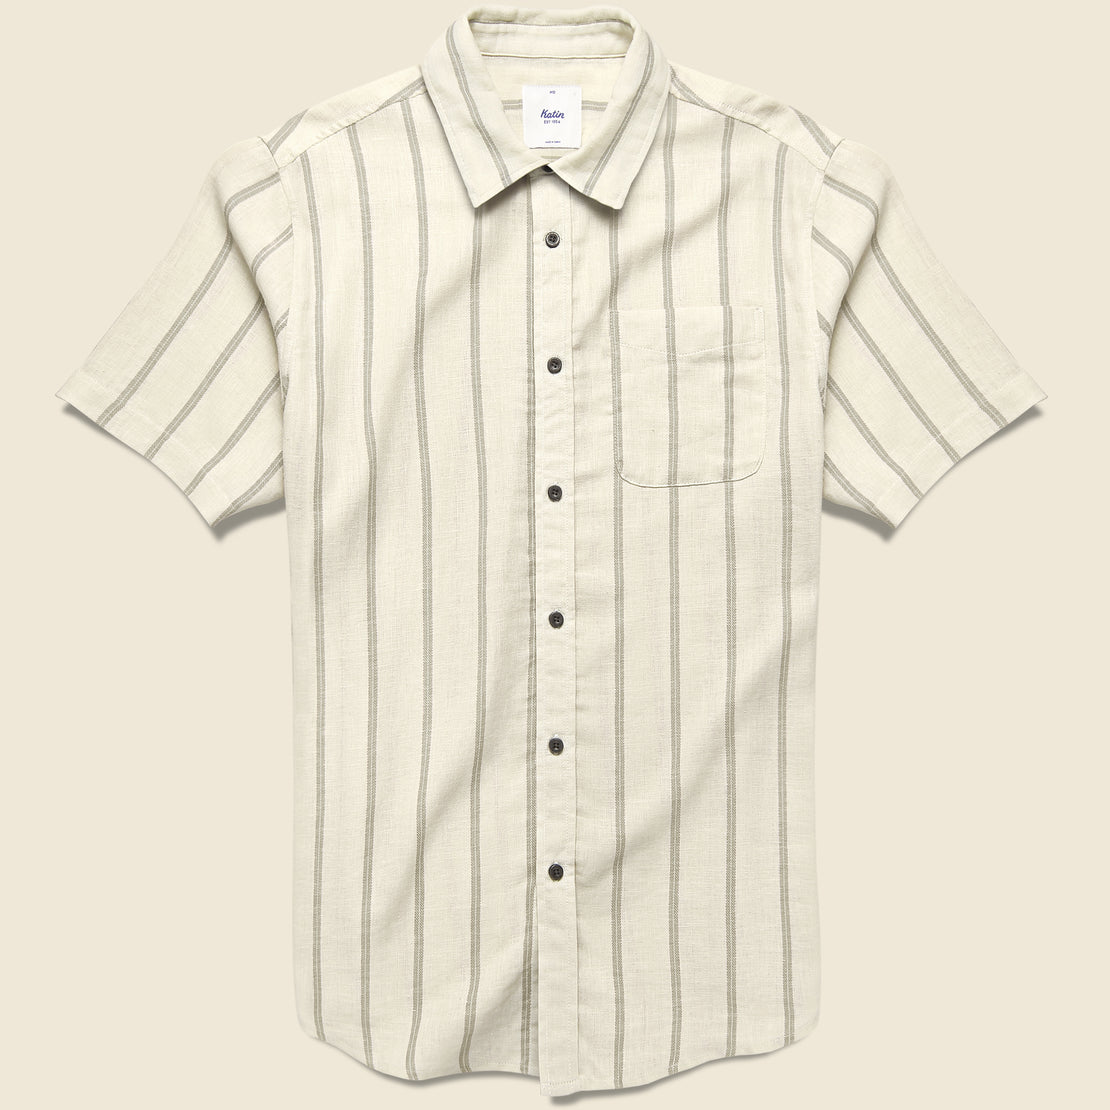 Katin Alan Shirt - Vintage White